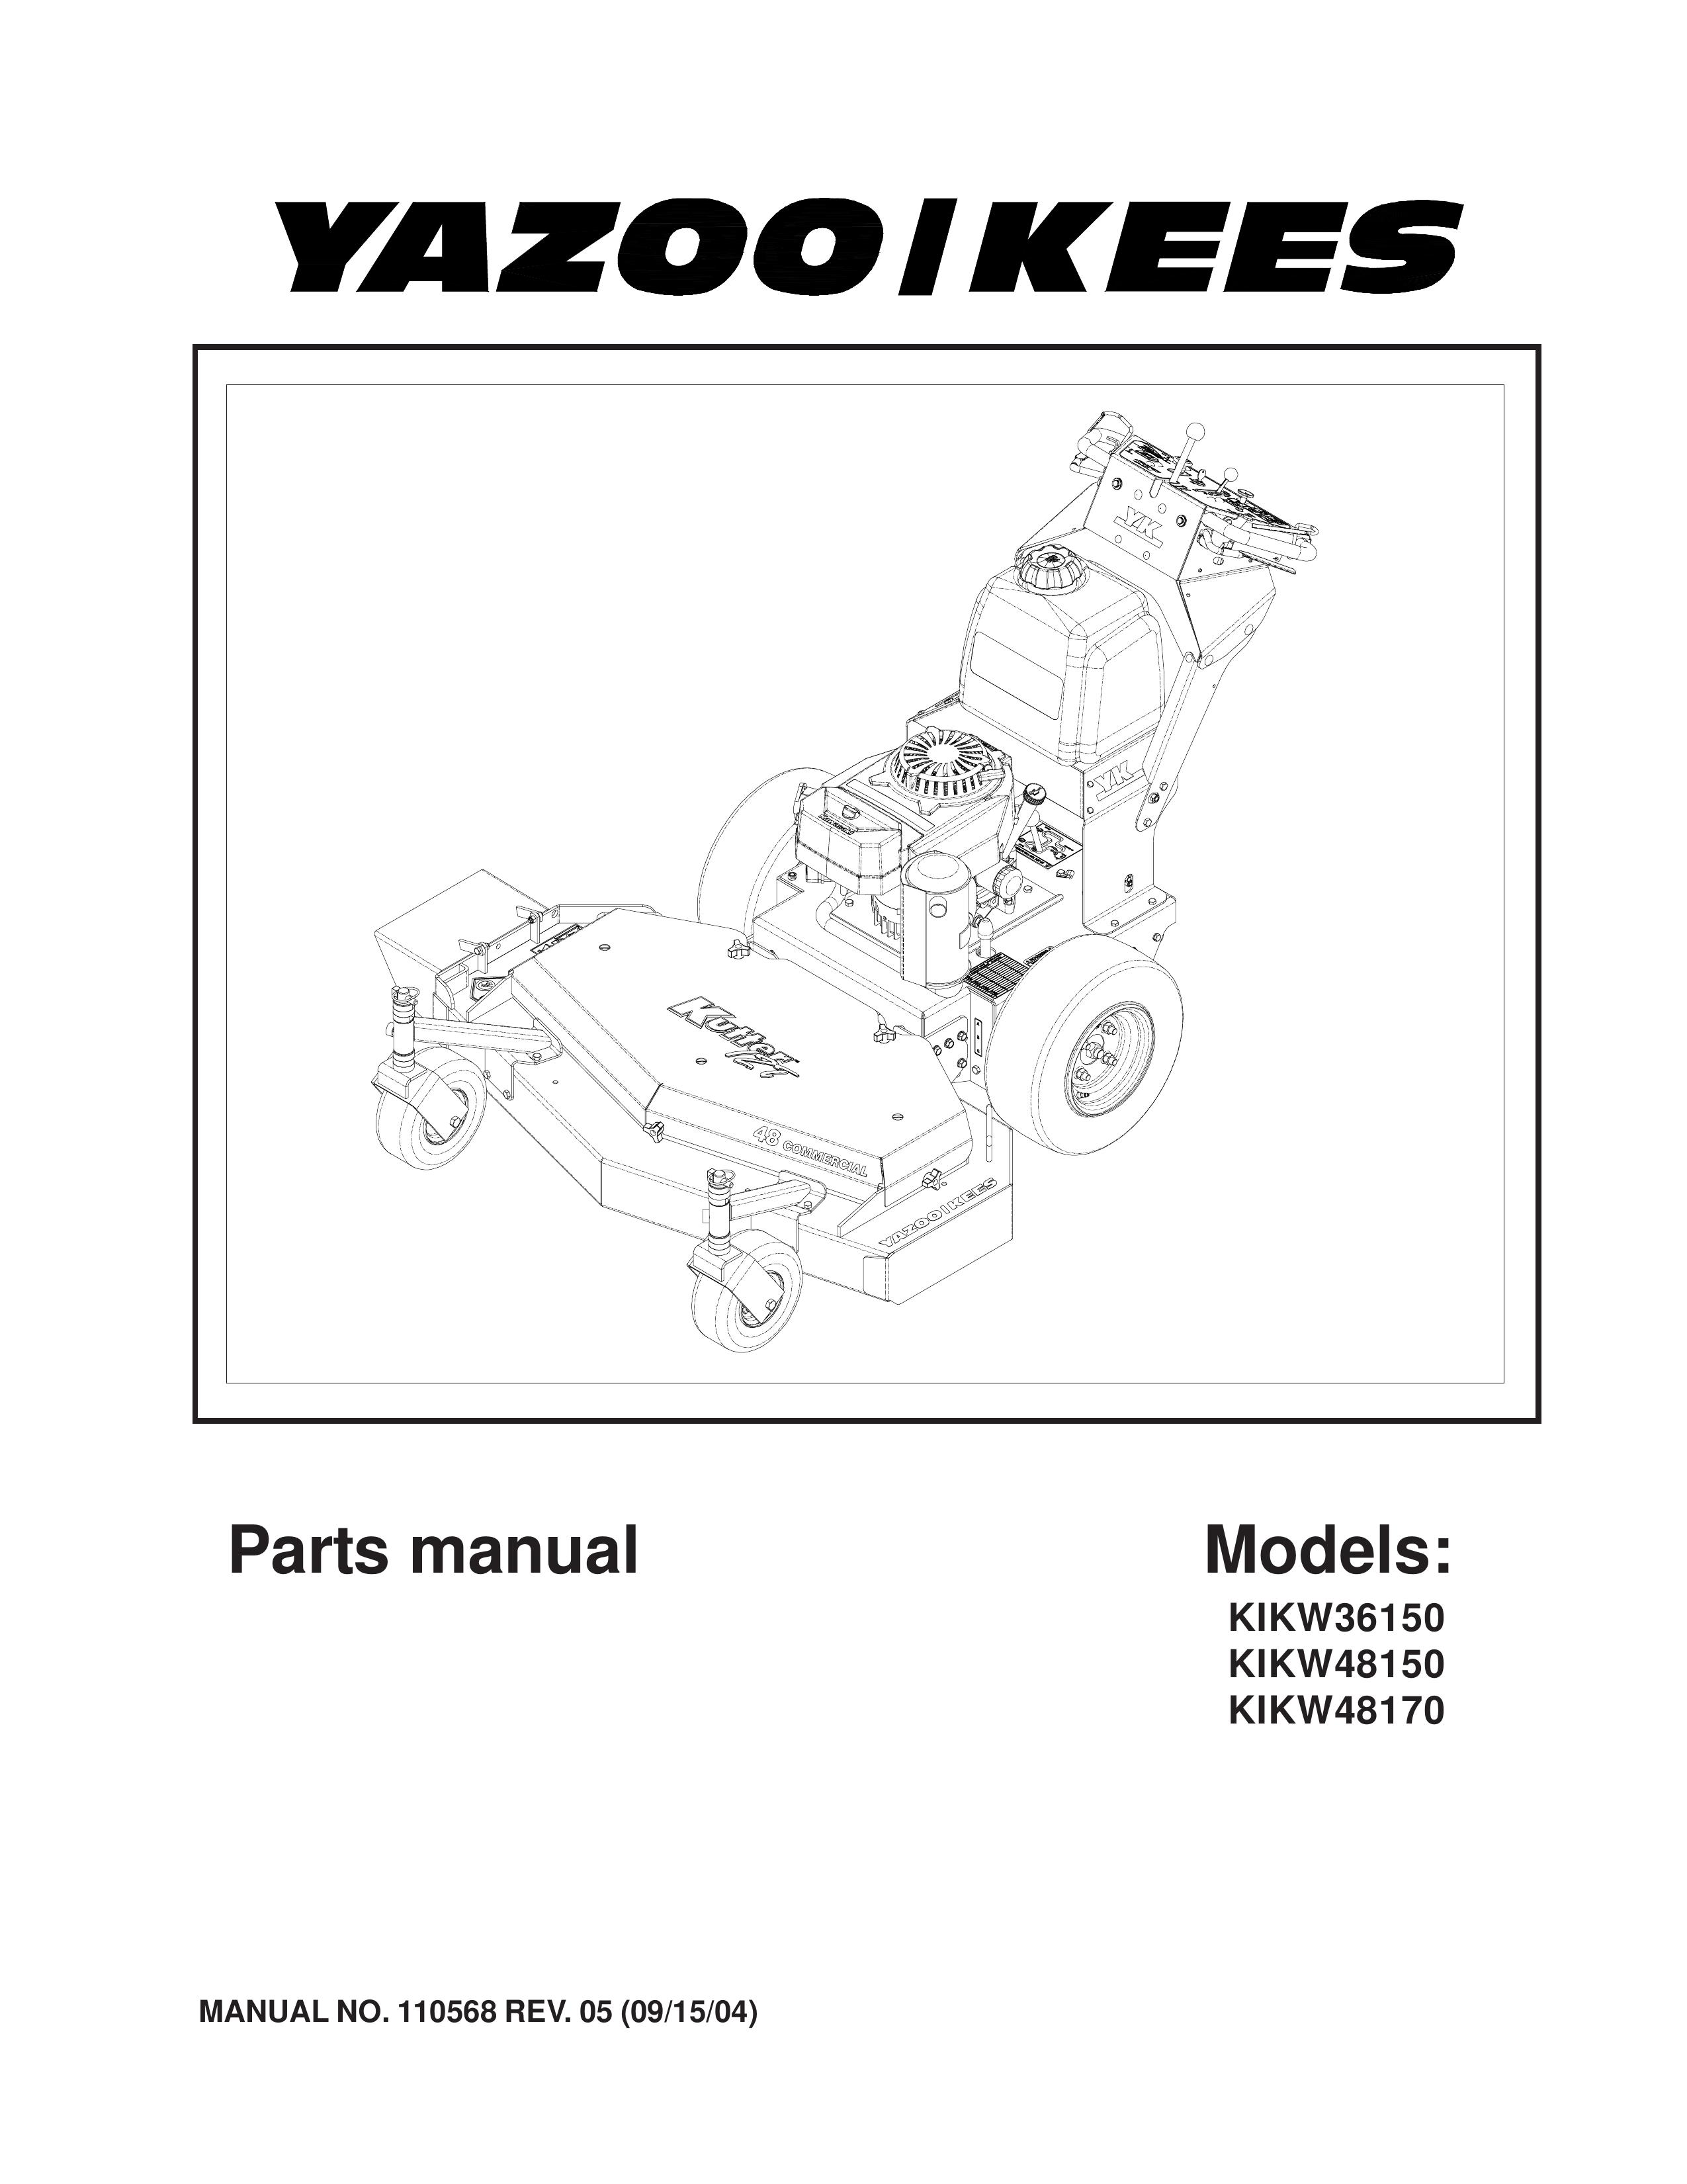 Yazoo/Kees KIKW48170 Lawn Mower User Manual